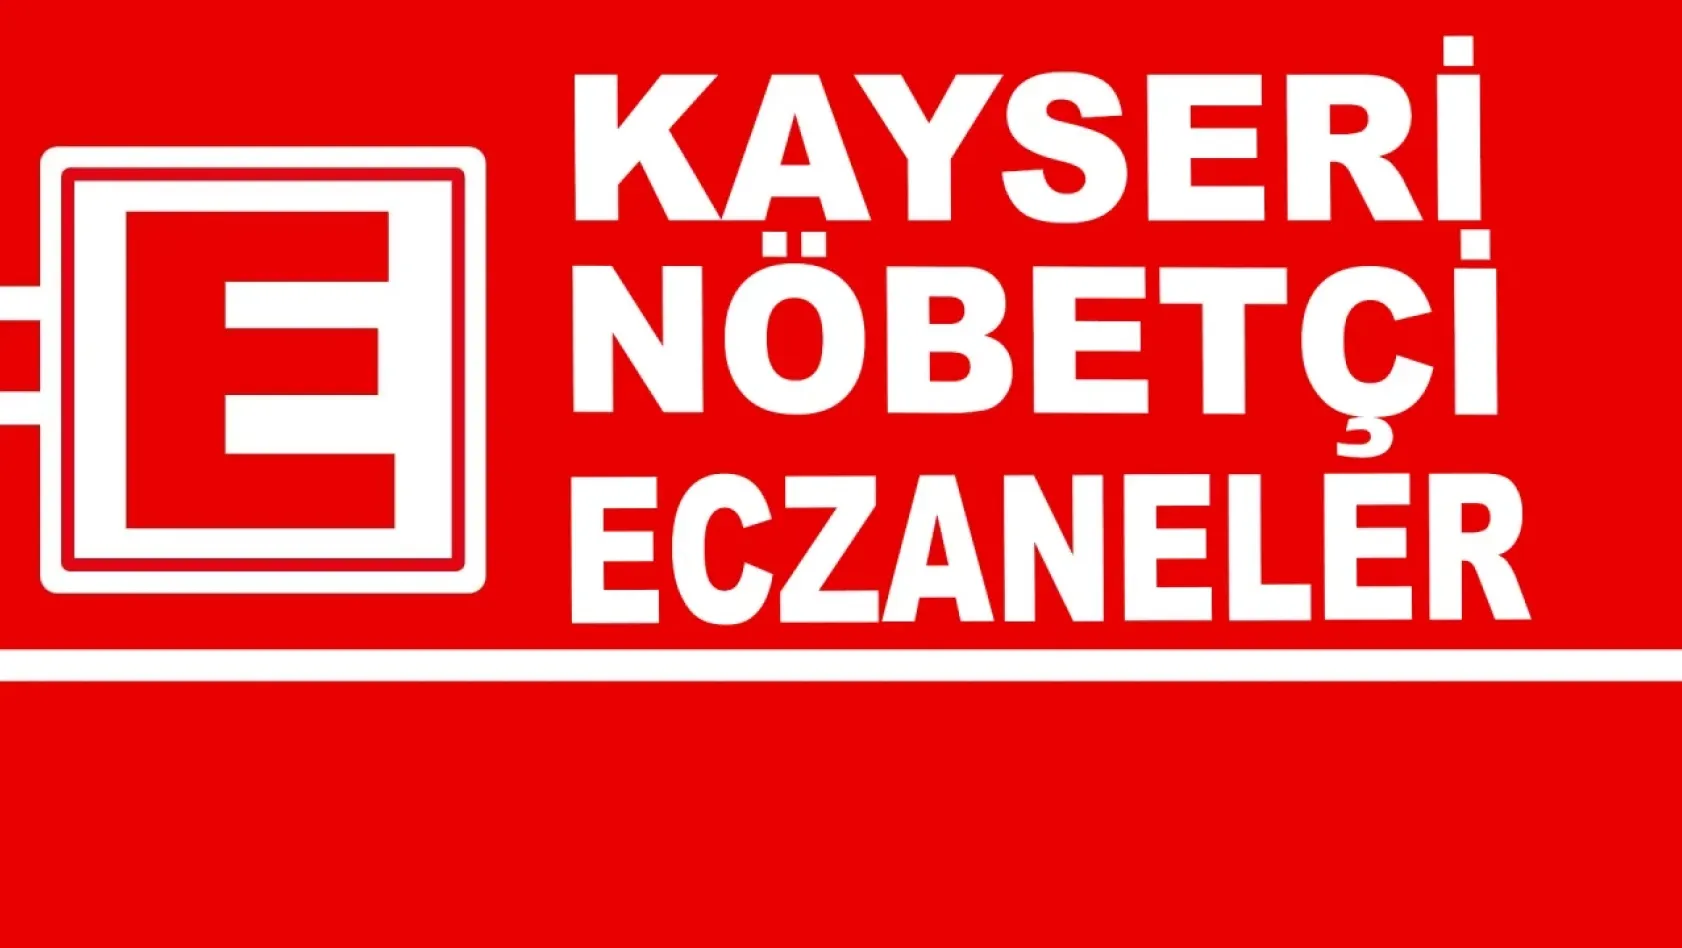 Kayseri'de 29 Nisan Cumartesi Nöbetçi Eczaneler